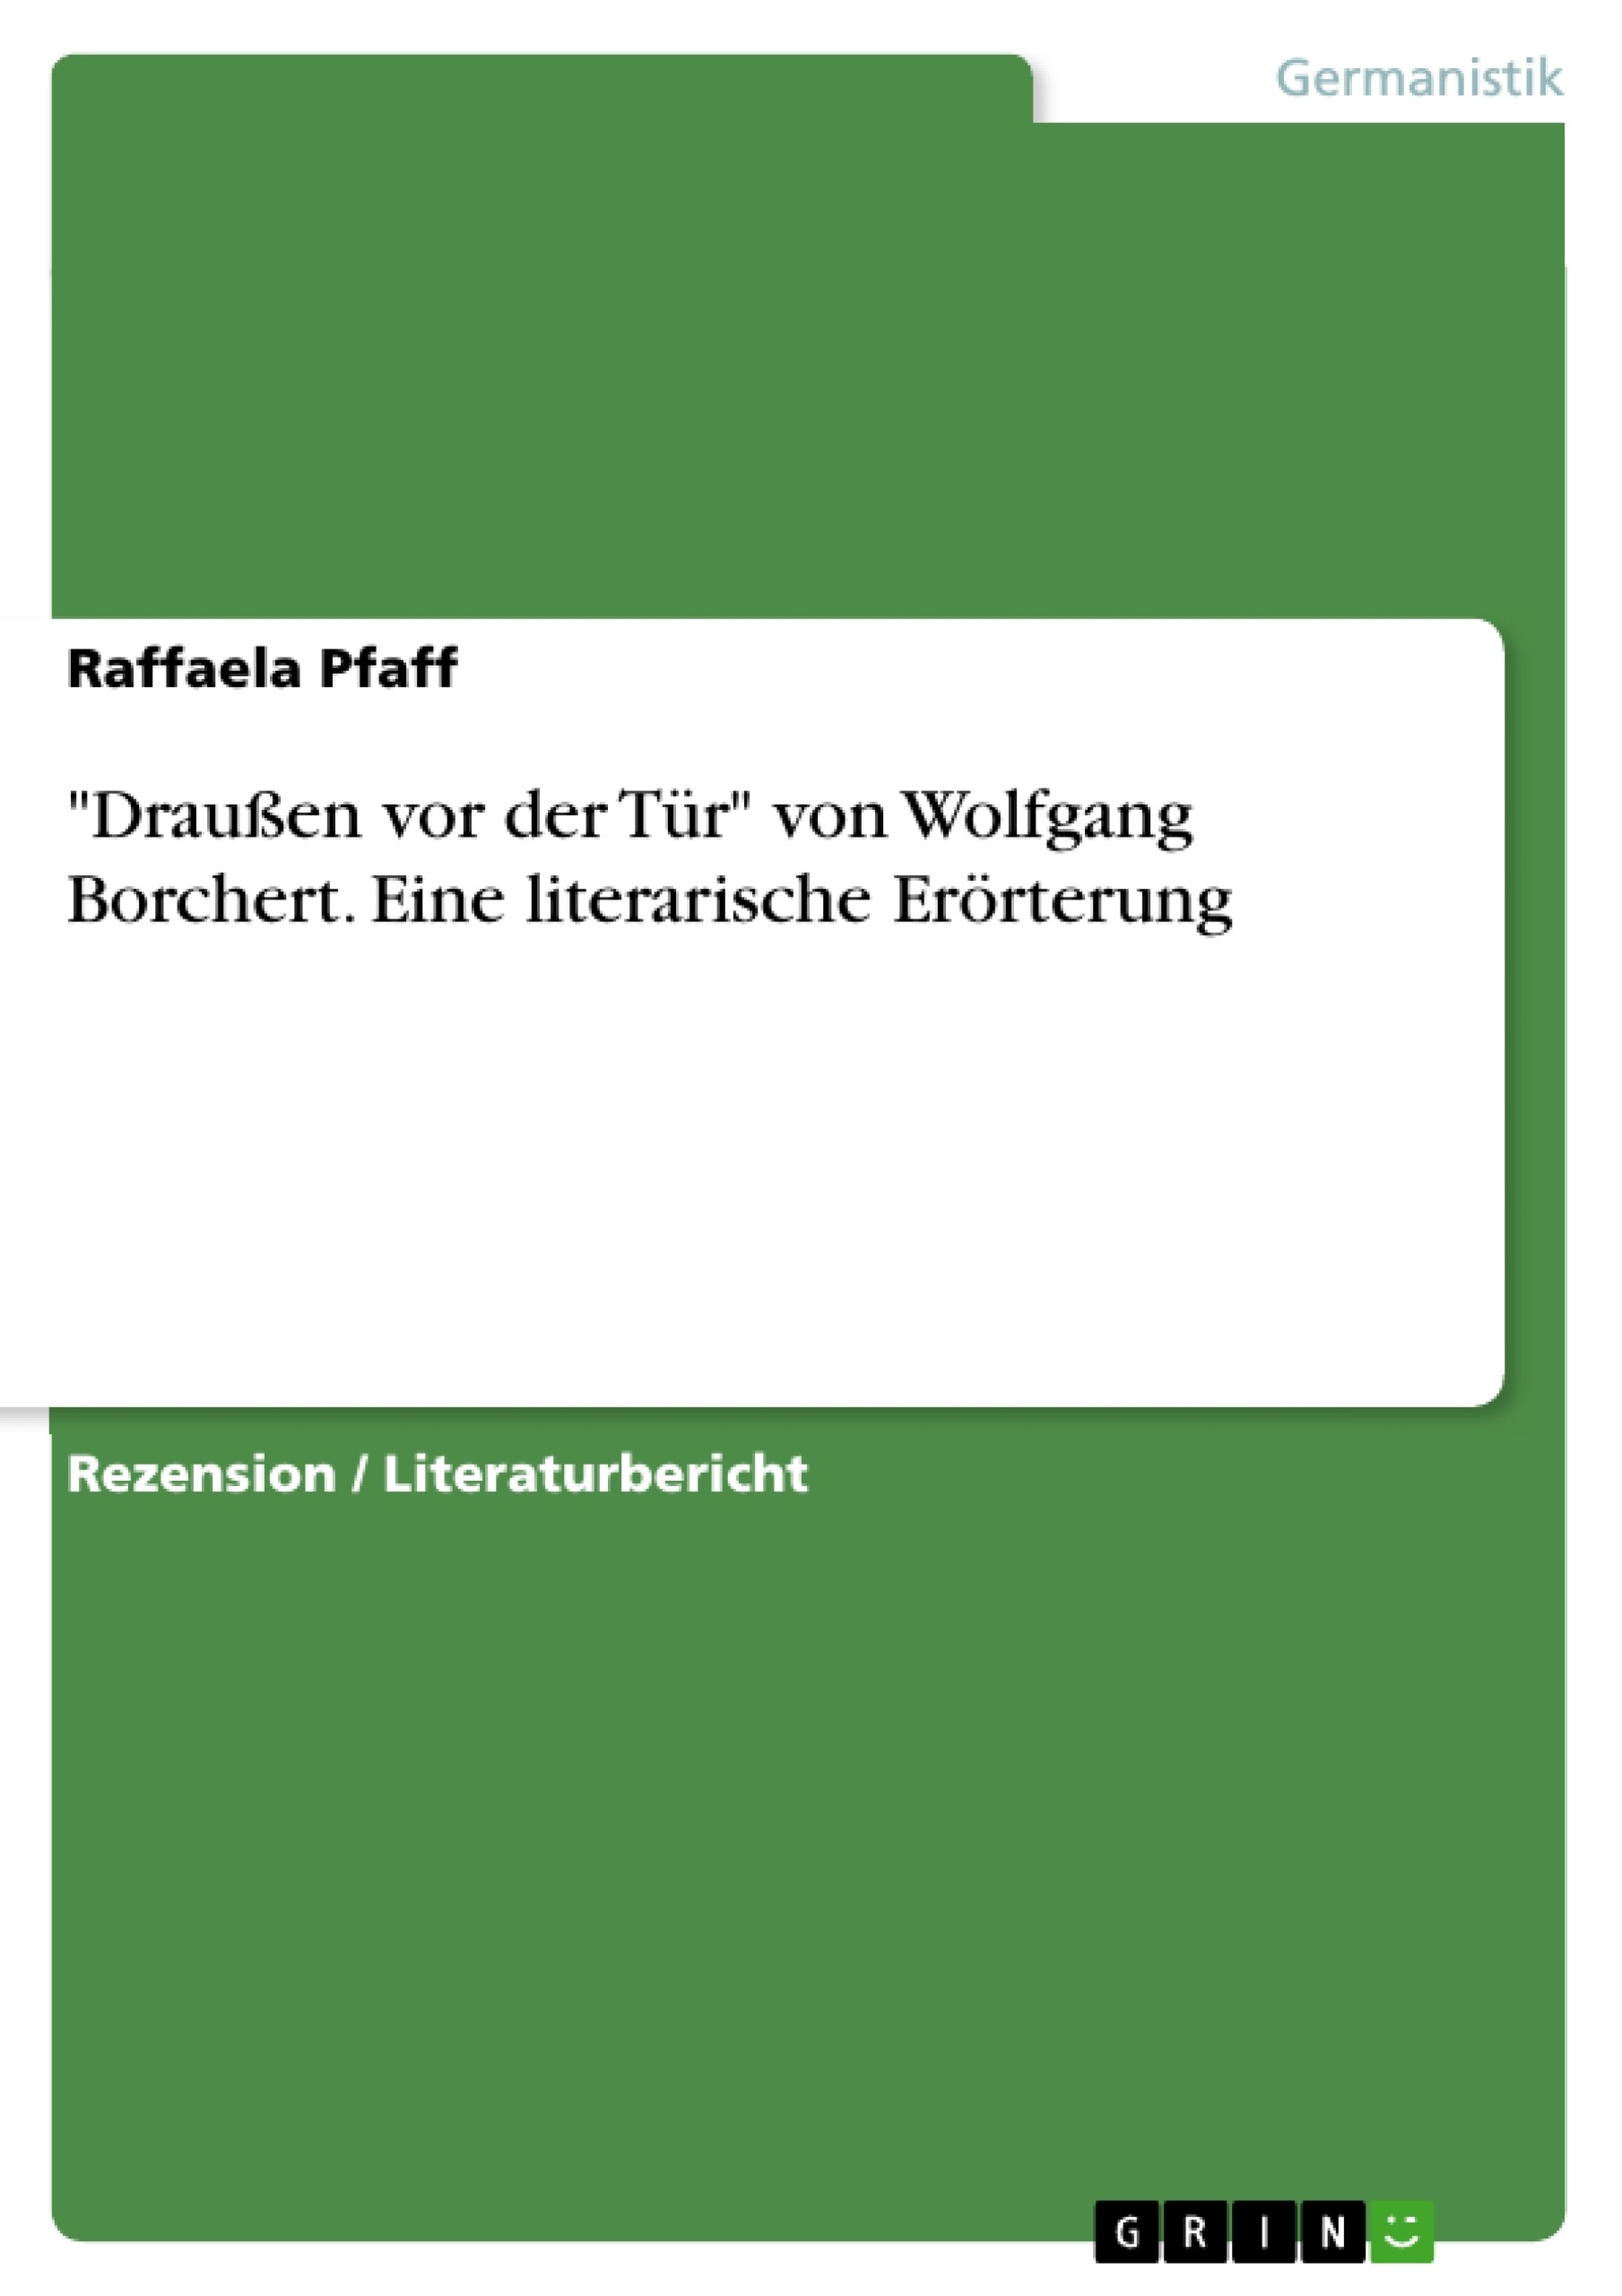 Title: "Draußen vor der Tür" von Wolfgang Borchert. Eine literarische Erörterung